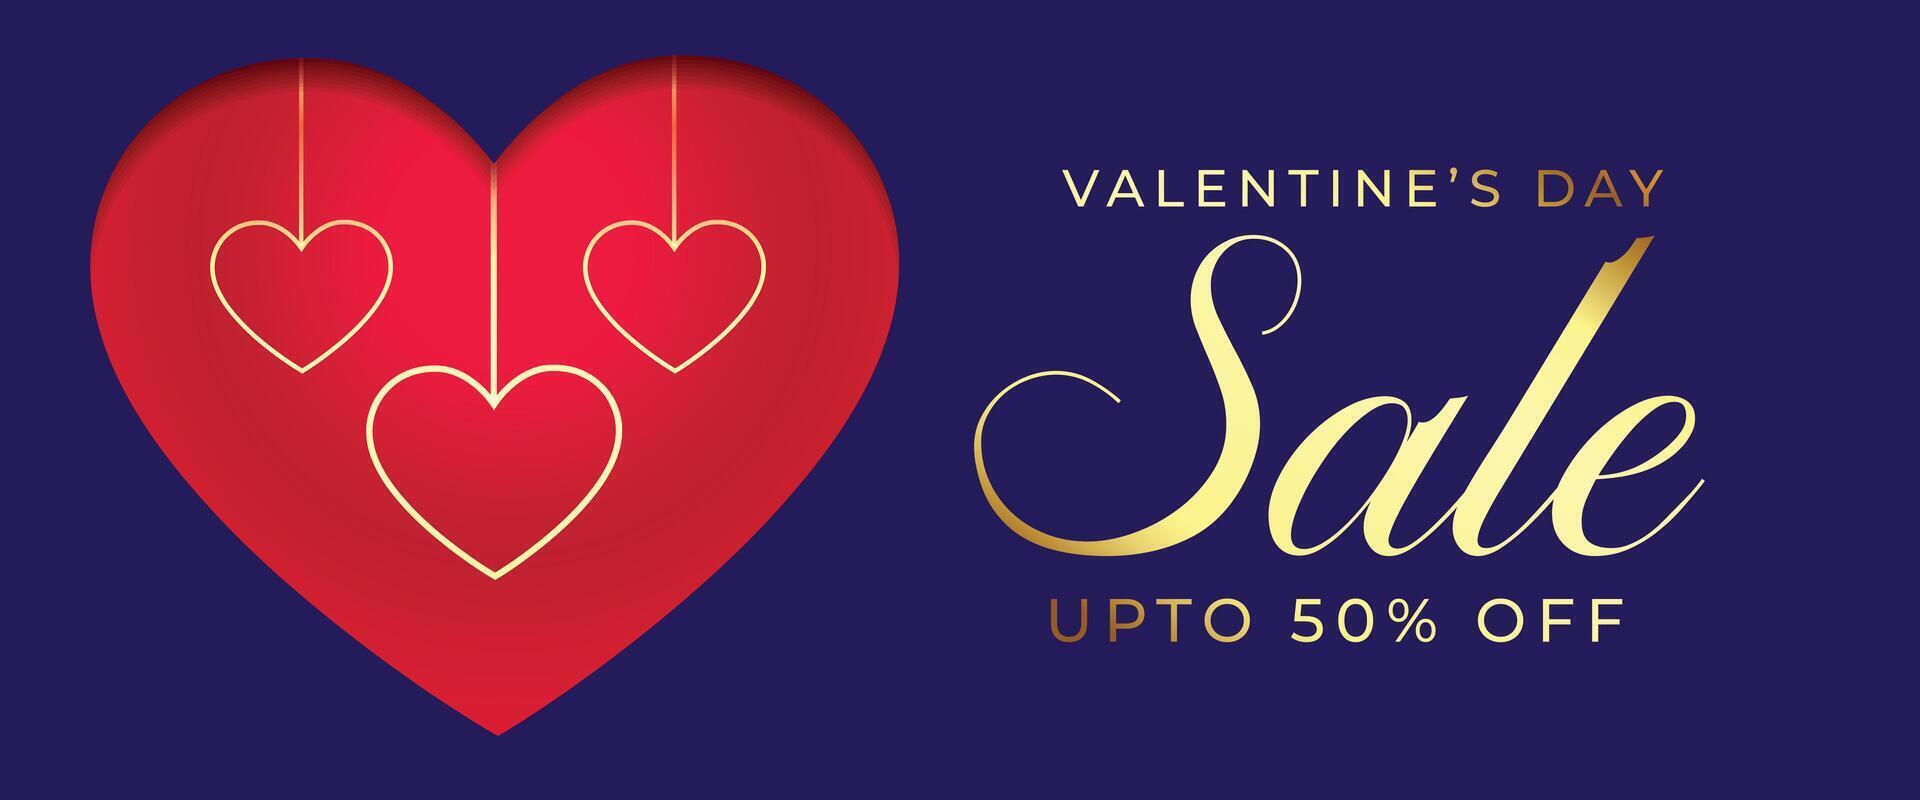 Valentinsgrüße Tag Verkauf und Rabatt Banner mit hängend Herzen vektor